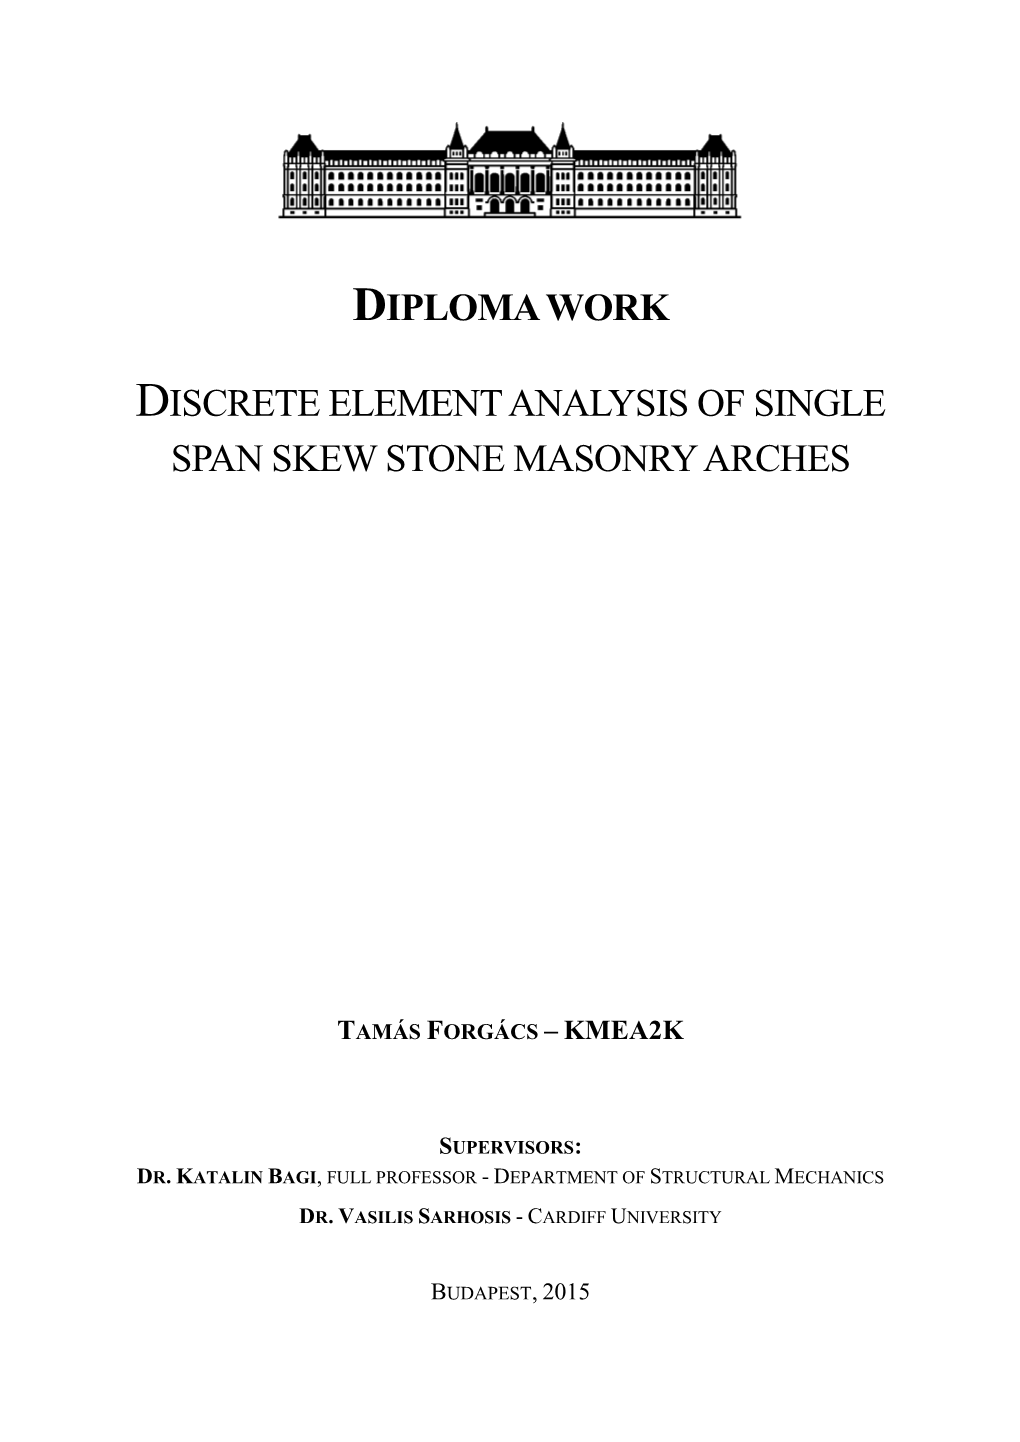 Discrete Element Analysis of Single Span Skew Stone Masonry Arches